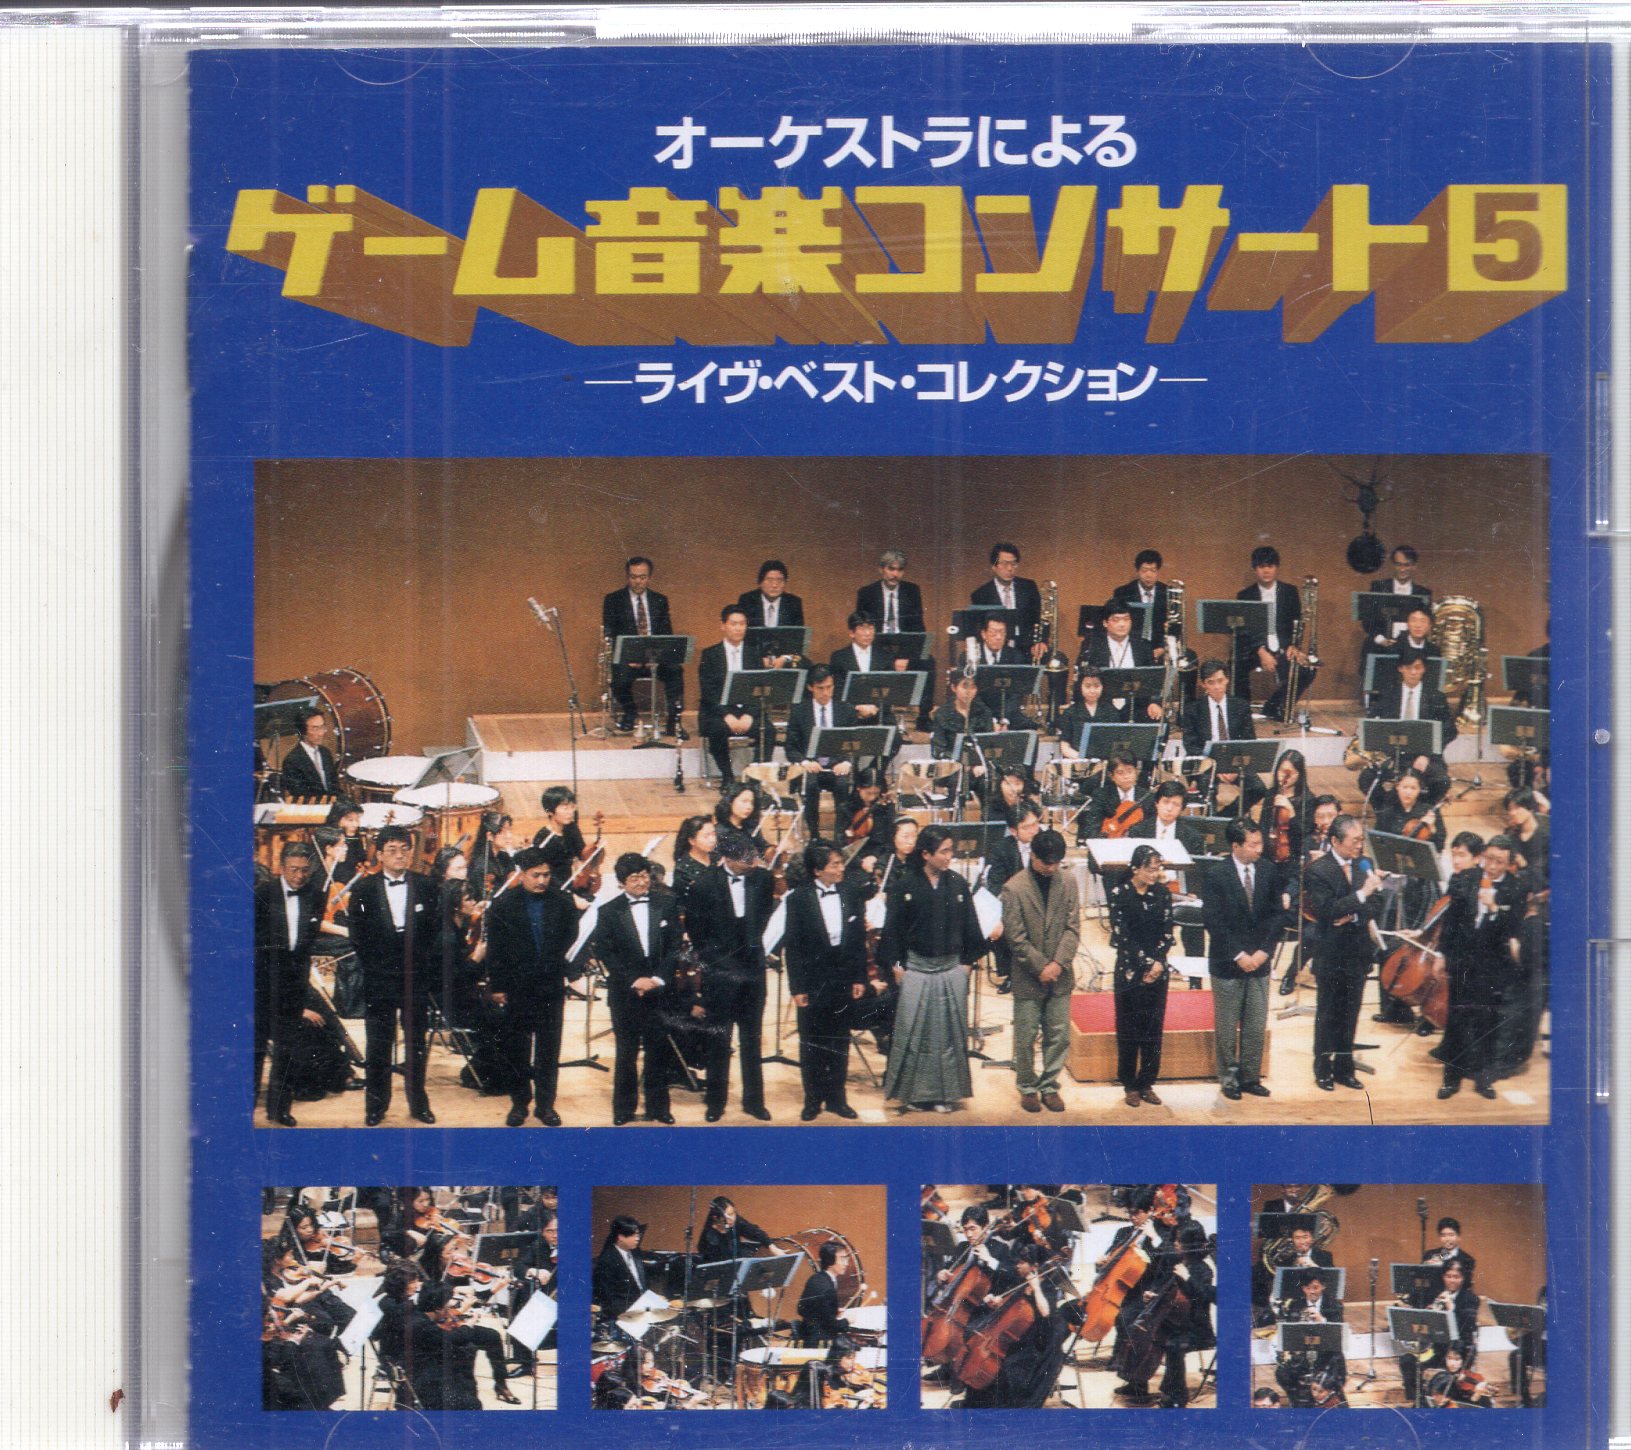 ソニーレコード ゲームCD オーケストラによるゲーム音楽コンサート ...